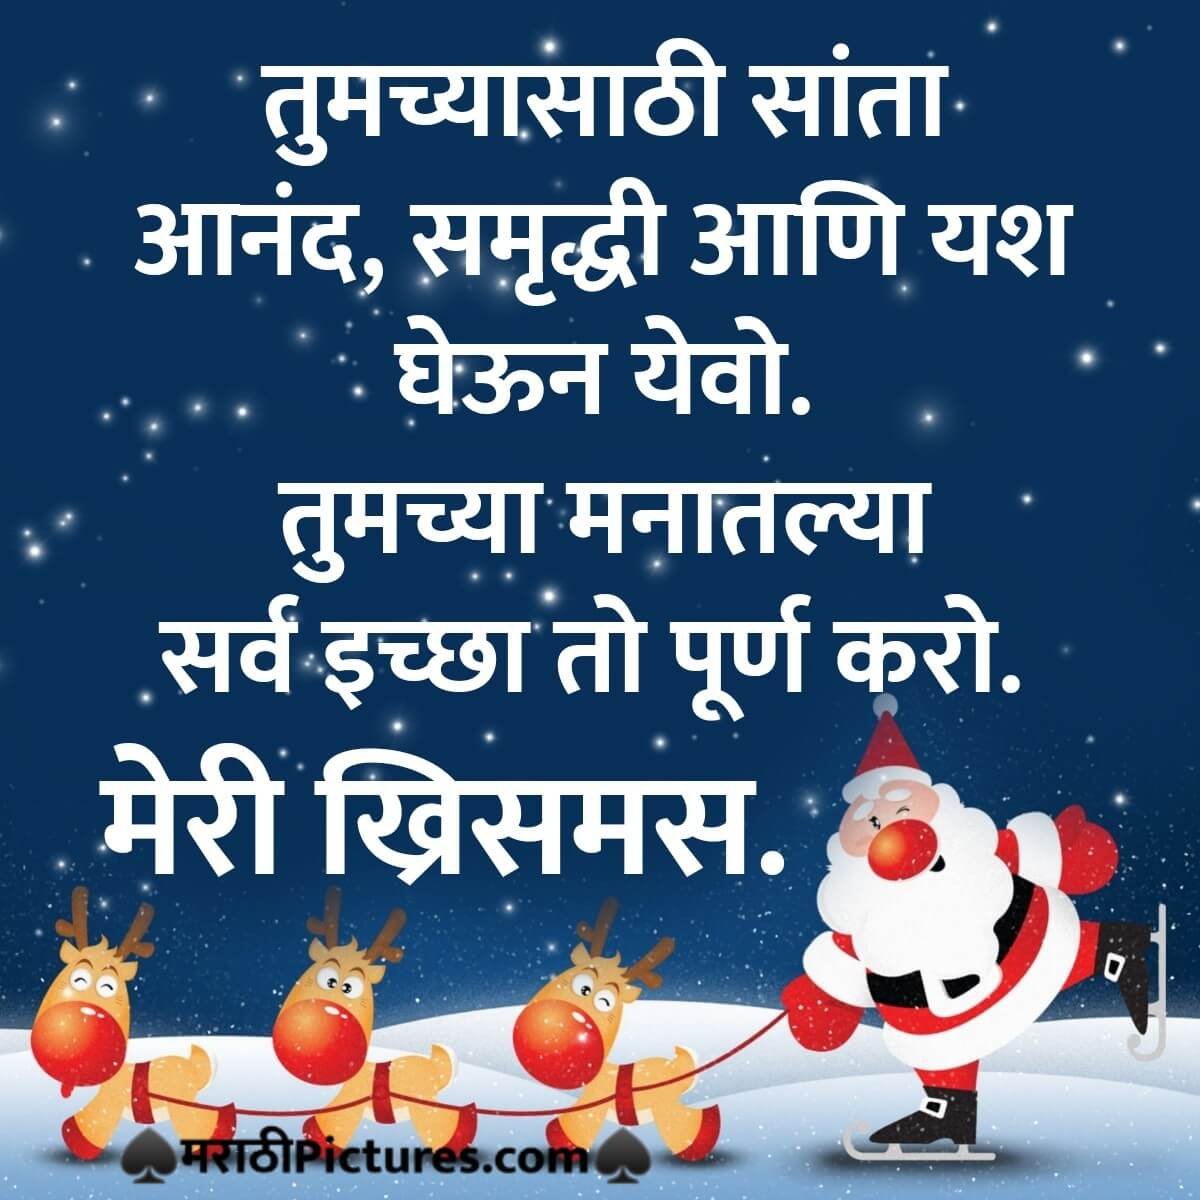 Merry Christmas Marathi Shubhechha For Colleagues